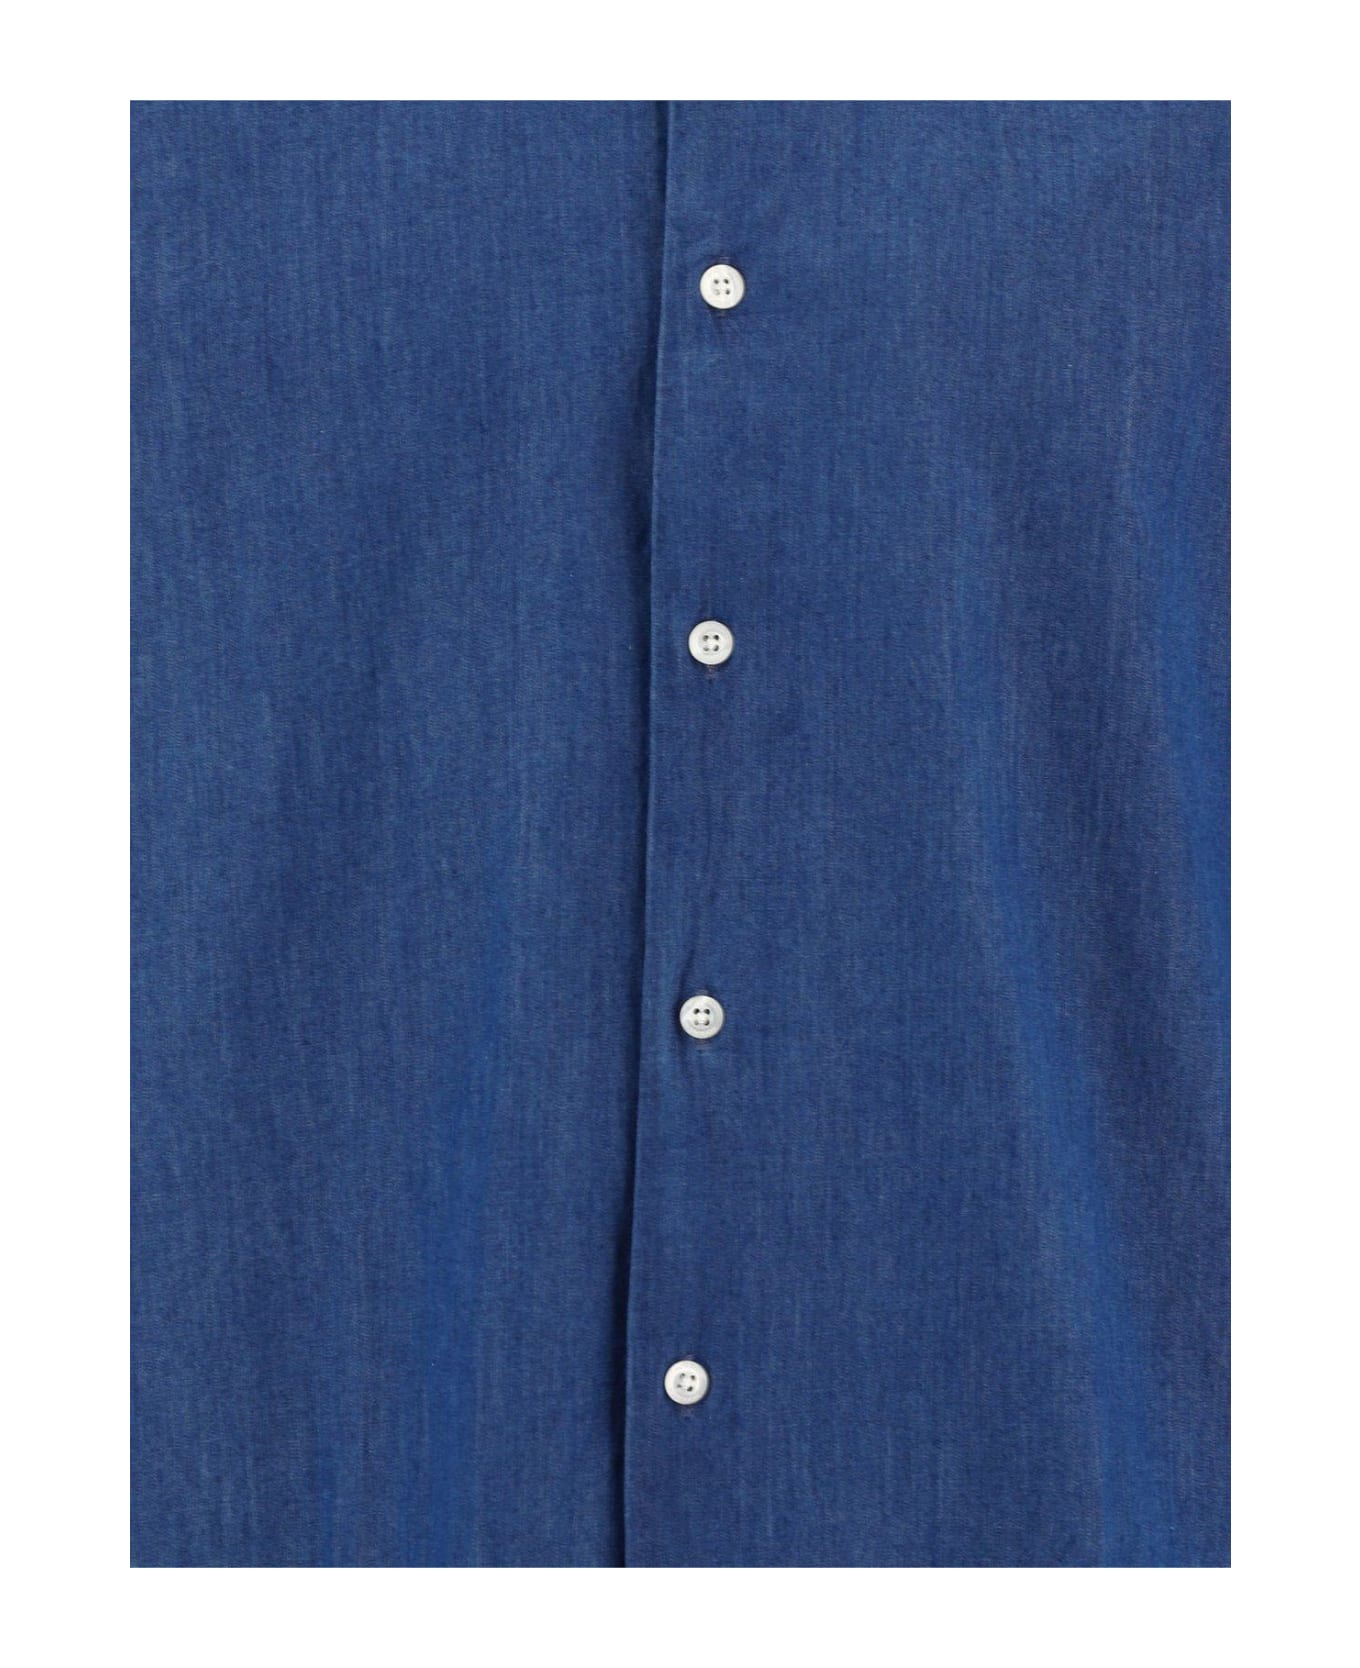 Woolrich Buttoned Long-sleeved Shirt - Light Indigo シャツ